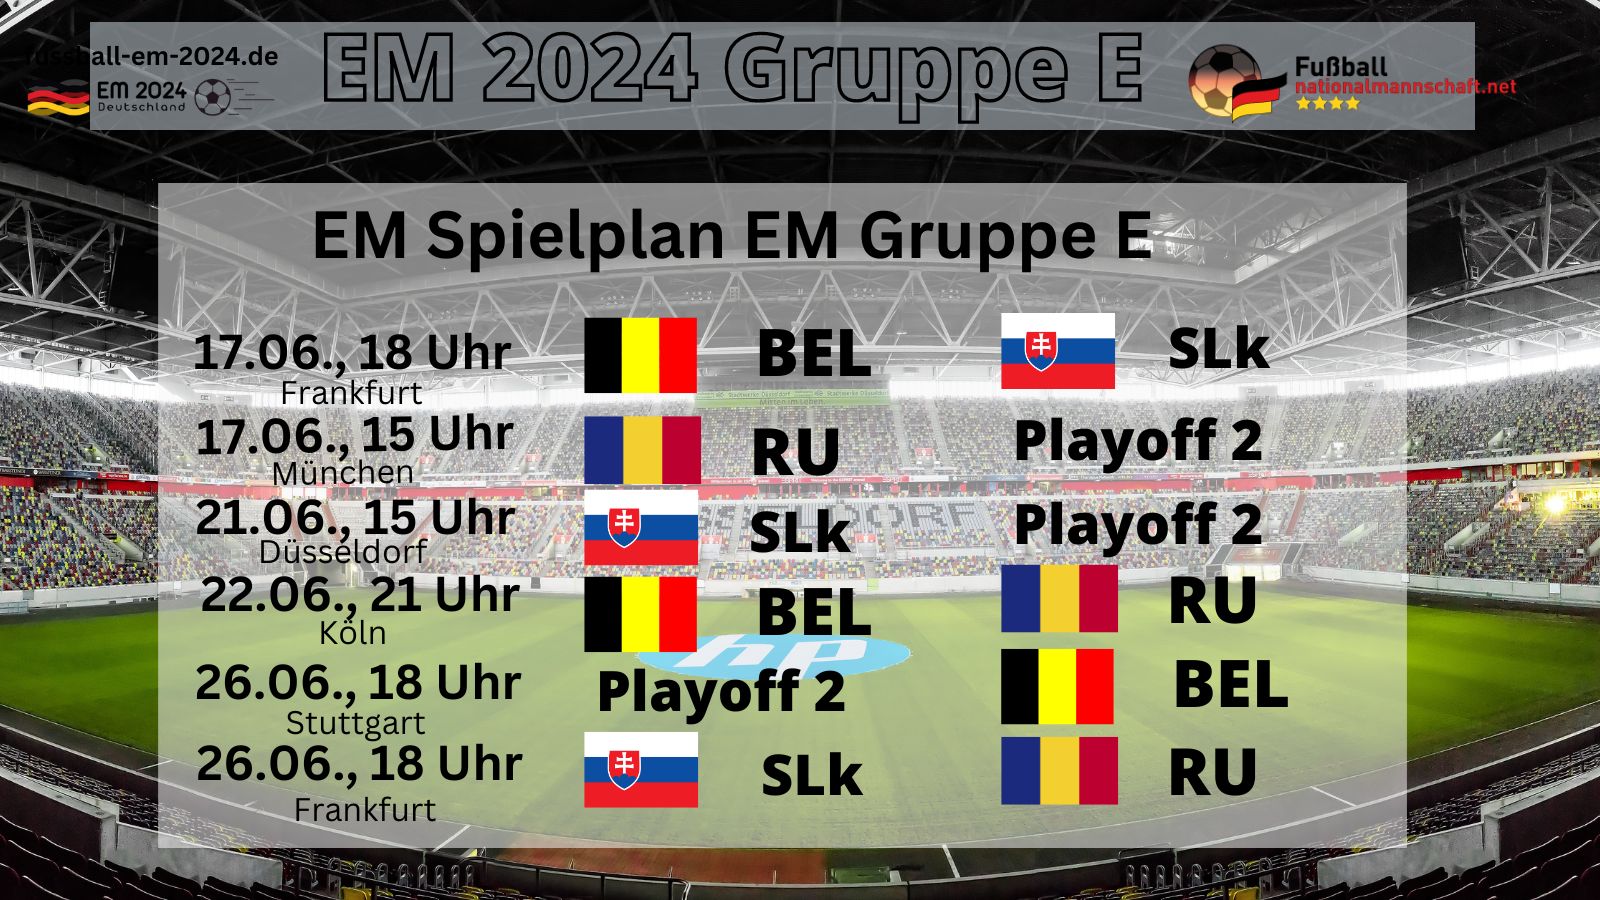 EM 2024 Gruppe E - Spielplan, Gegner, Spielorte